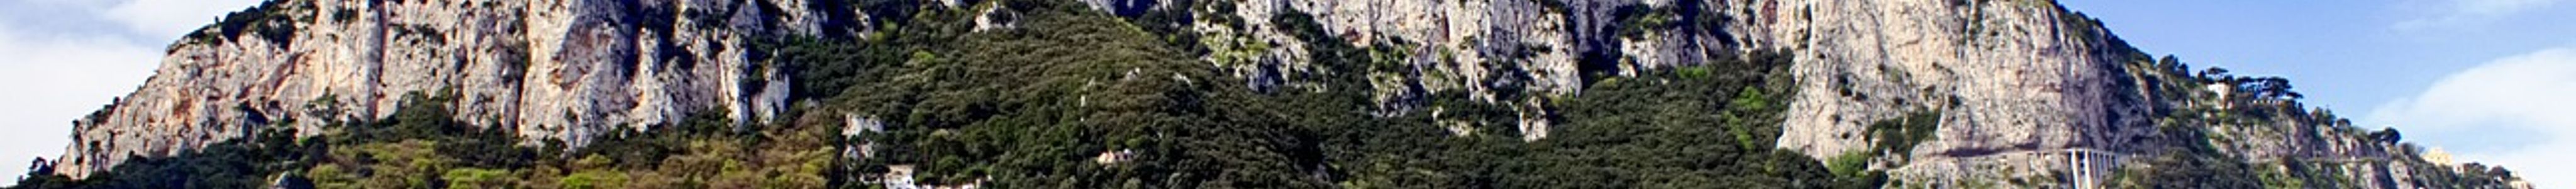 Scopri i segreti della Costiera Amalfitana in un tour guidato privato